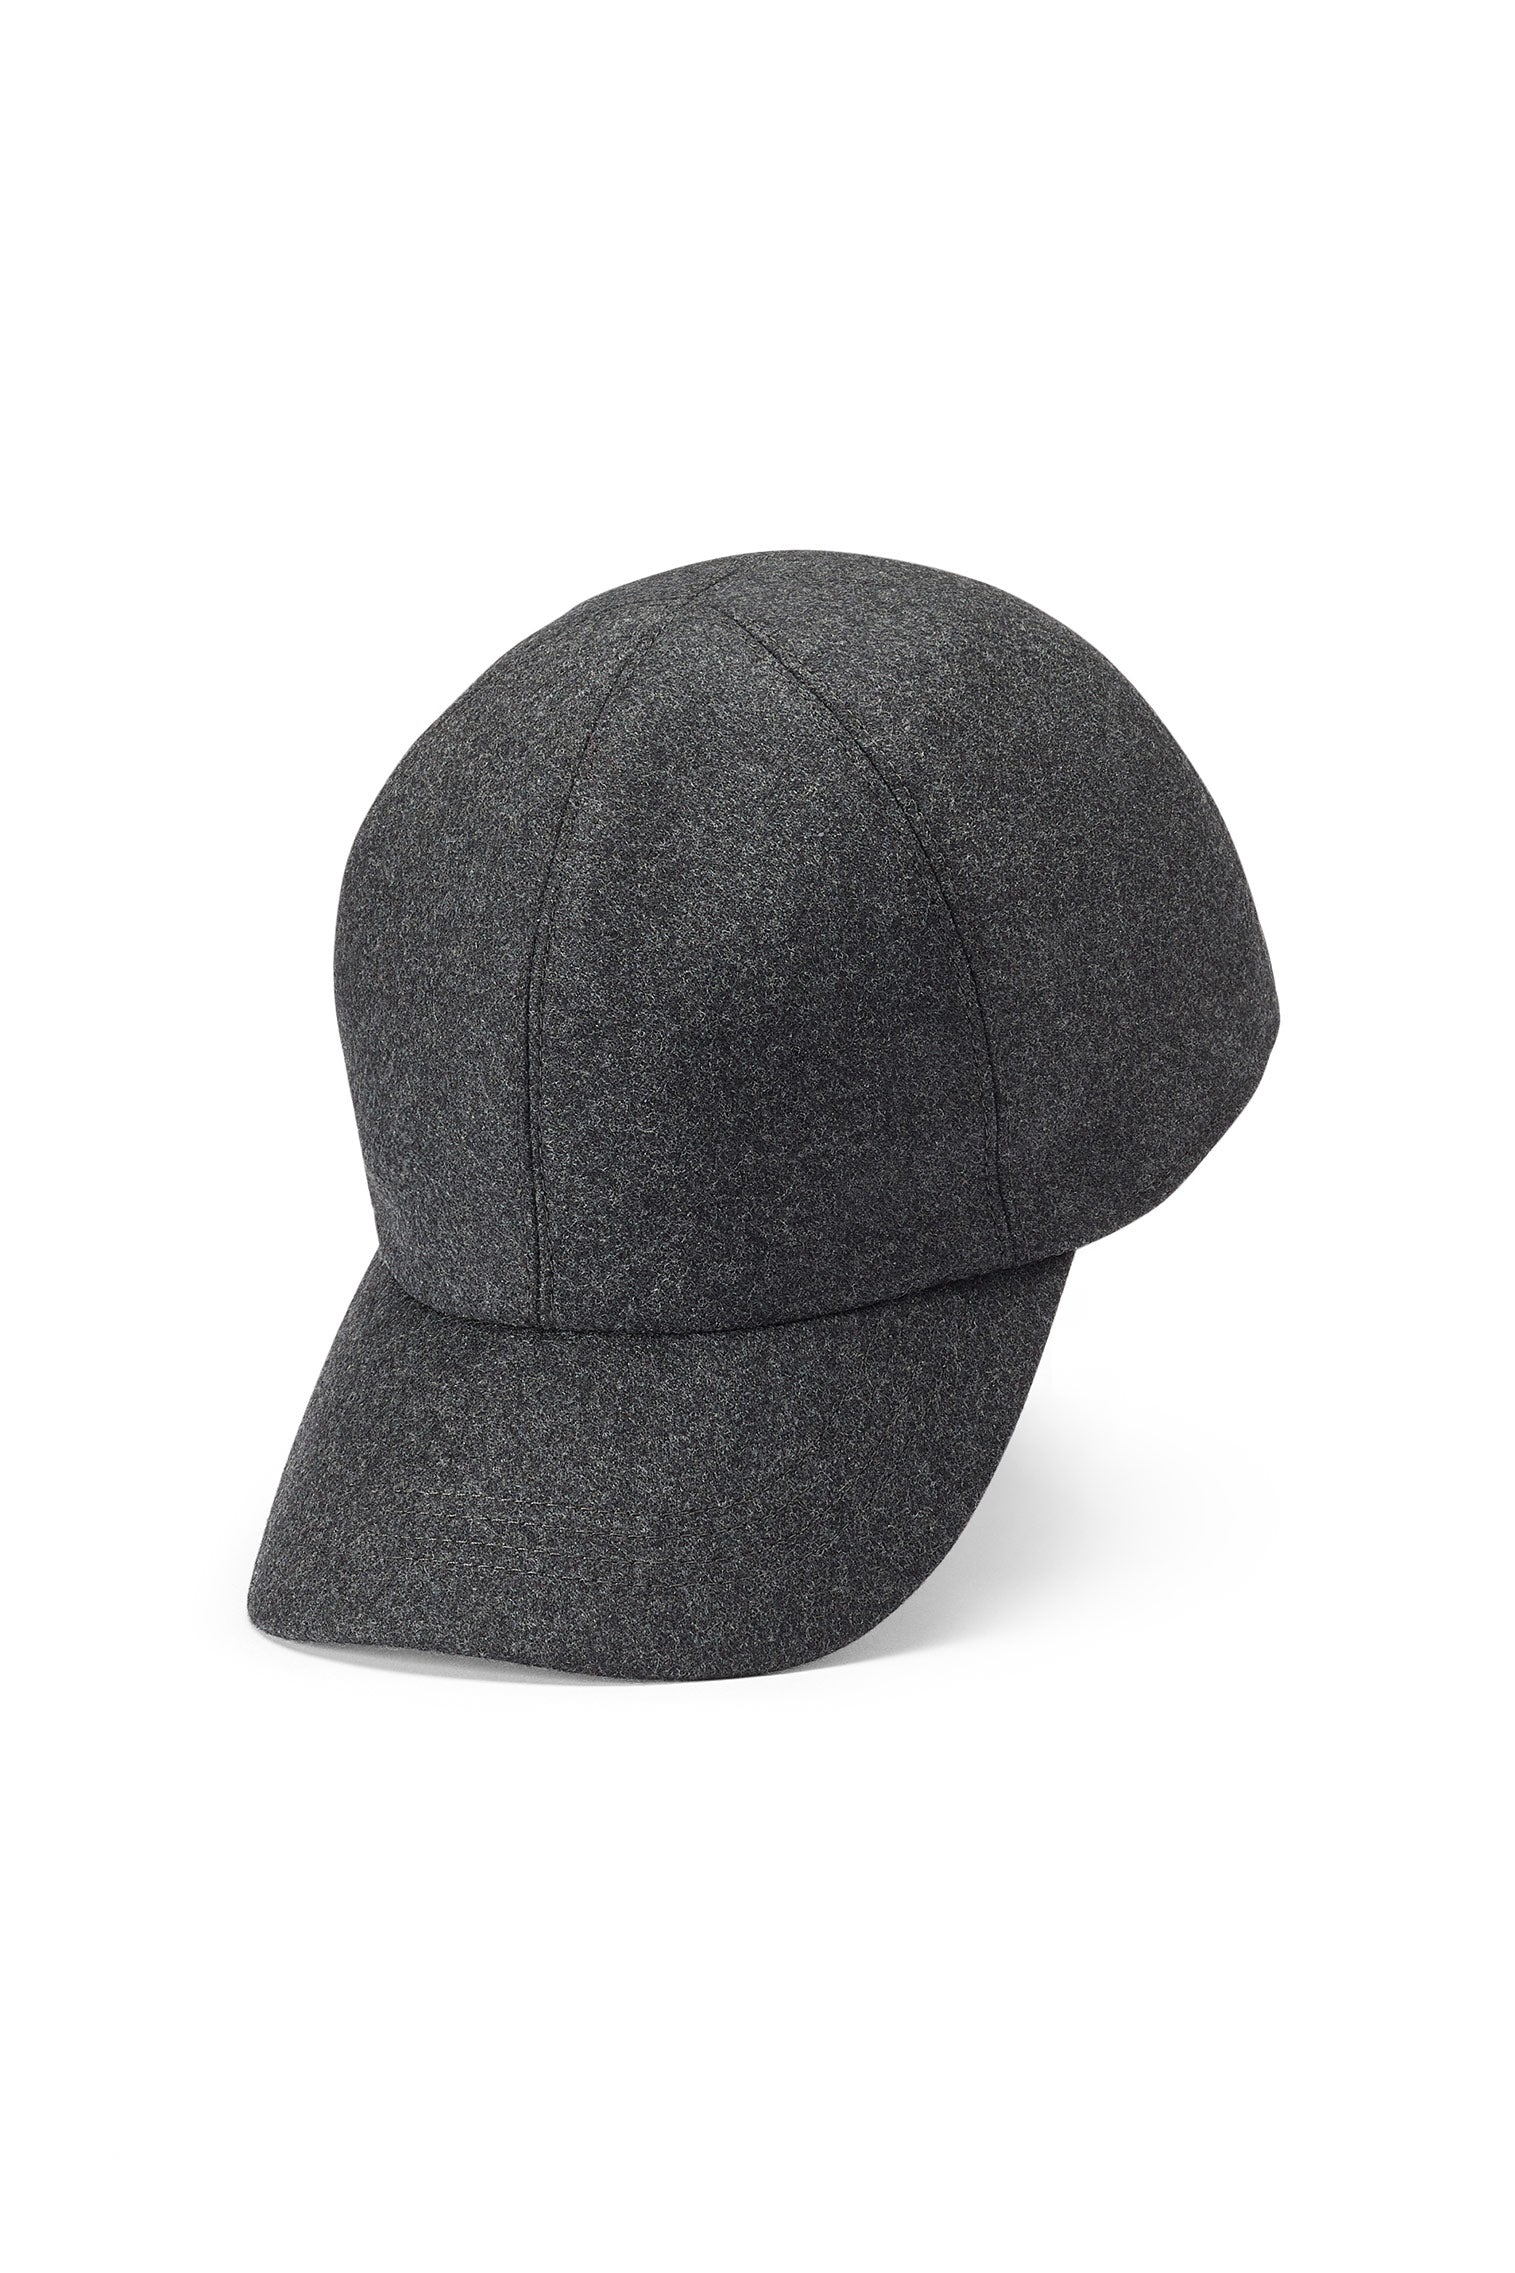 Visby Wool Baseball Cap - Men's Hats - Lock & Co. Hatters London UK